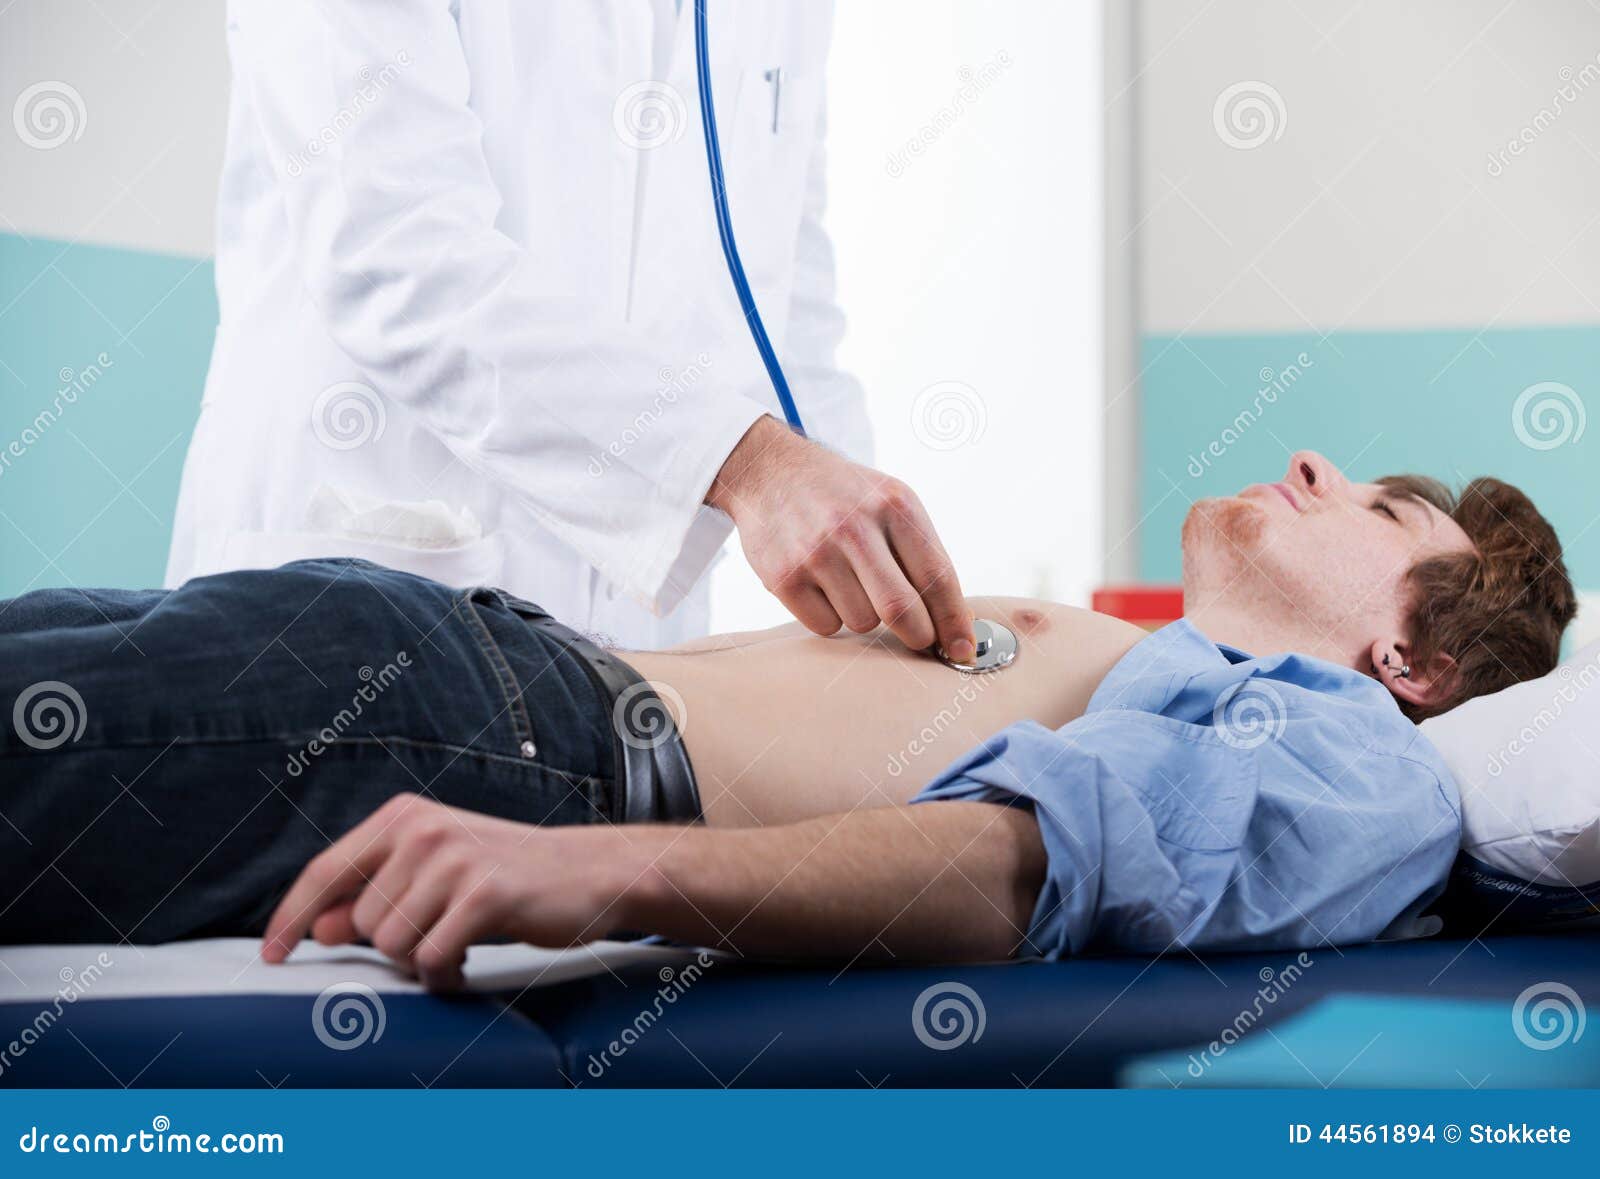 Doctor examined. Врач слушает пациента стетоскопом. Врач пальпирует живот мужчины.